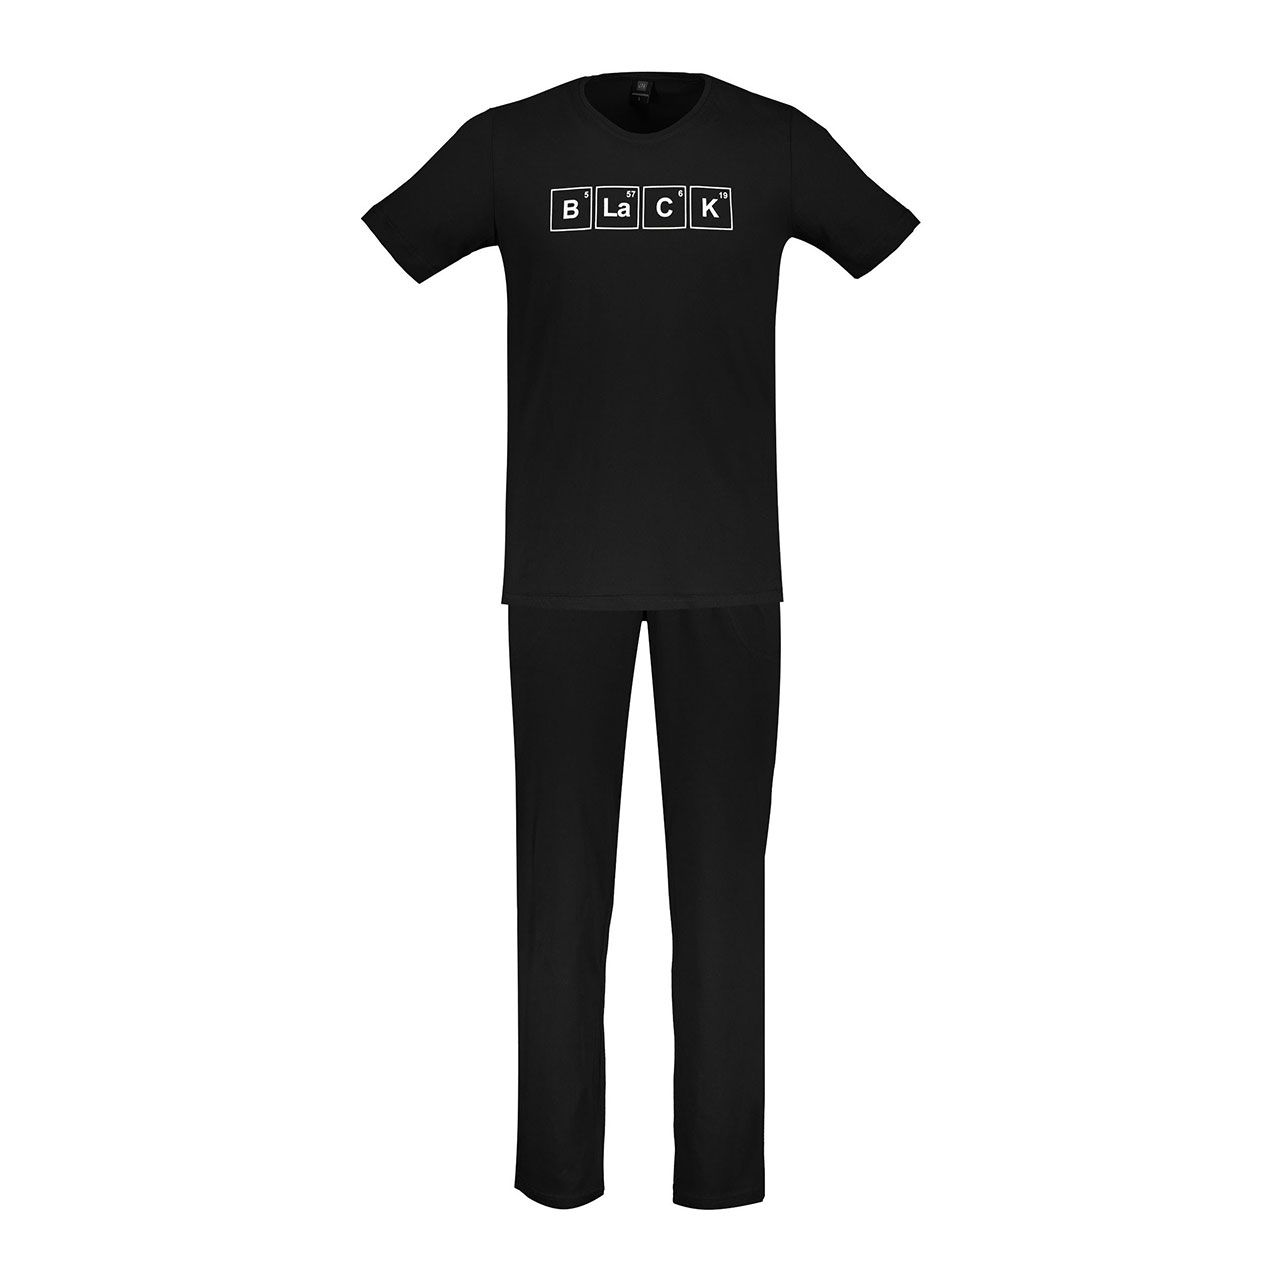 ست تی شرت و شلوار مردانه جامه پوش آرا مدل 4031016456-99 -  - 1